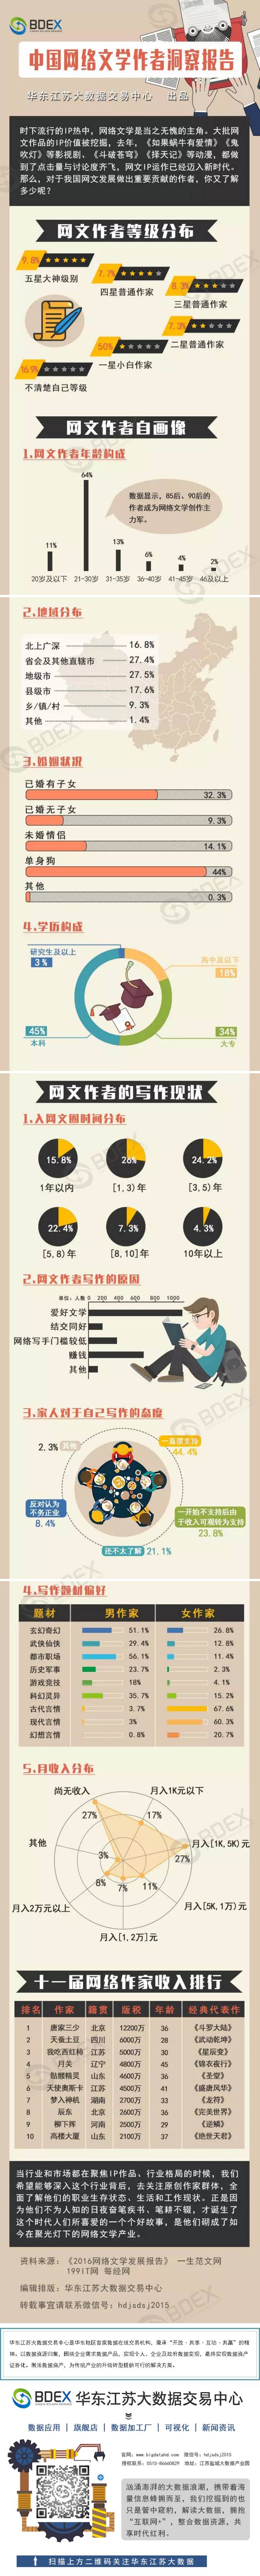 中国网络文学作者洞察报告.png